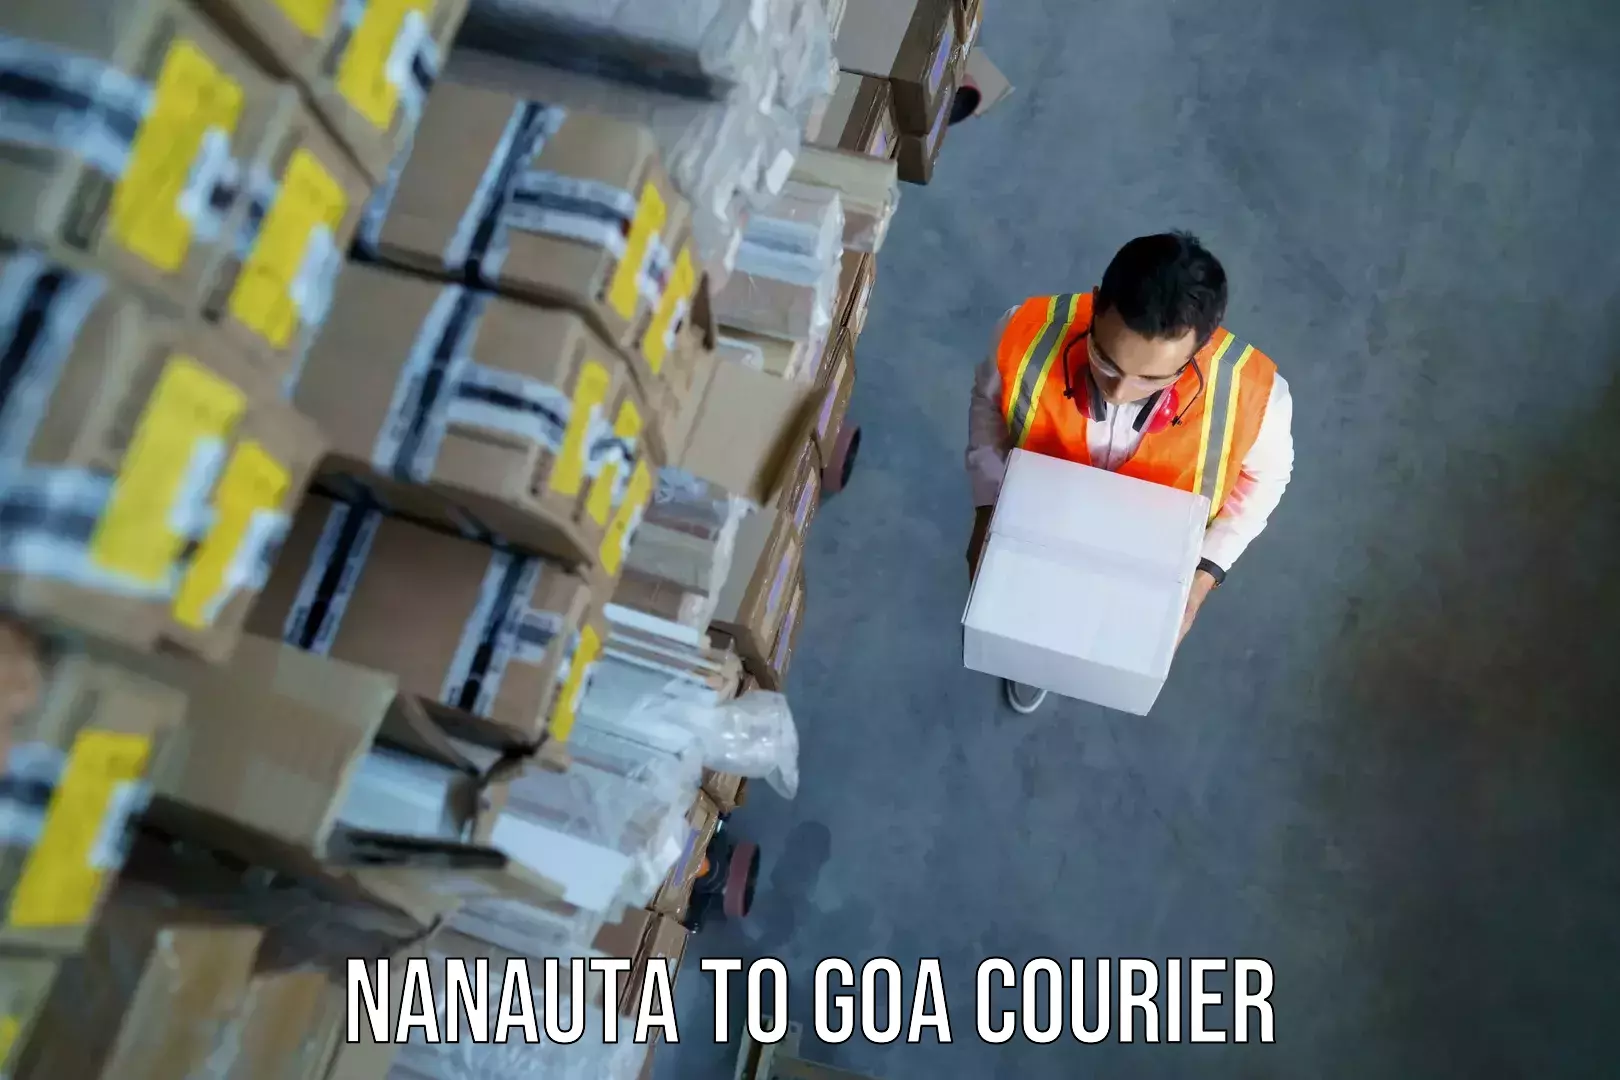 Baggage shipping schedule in Nanauta to Goa